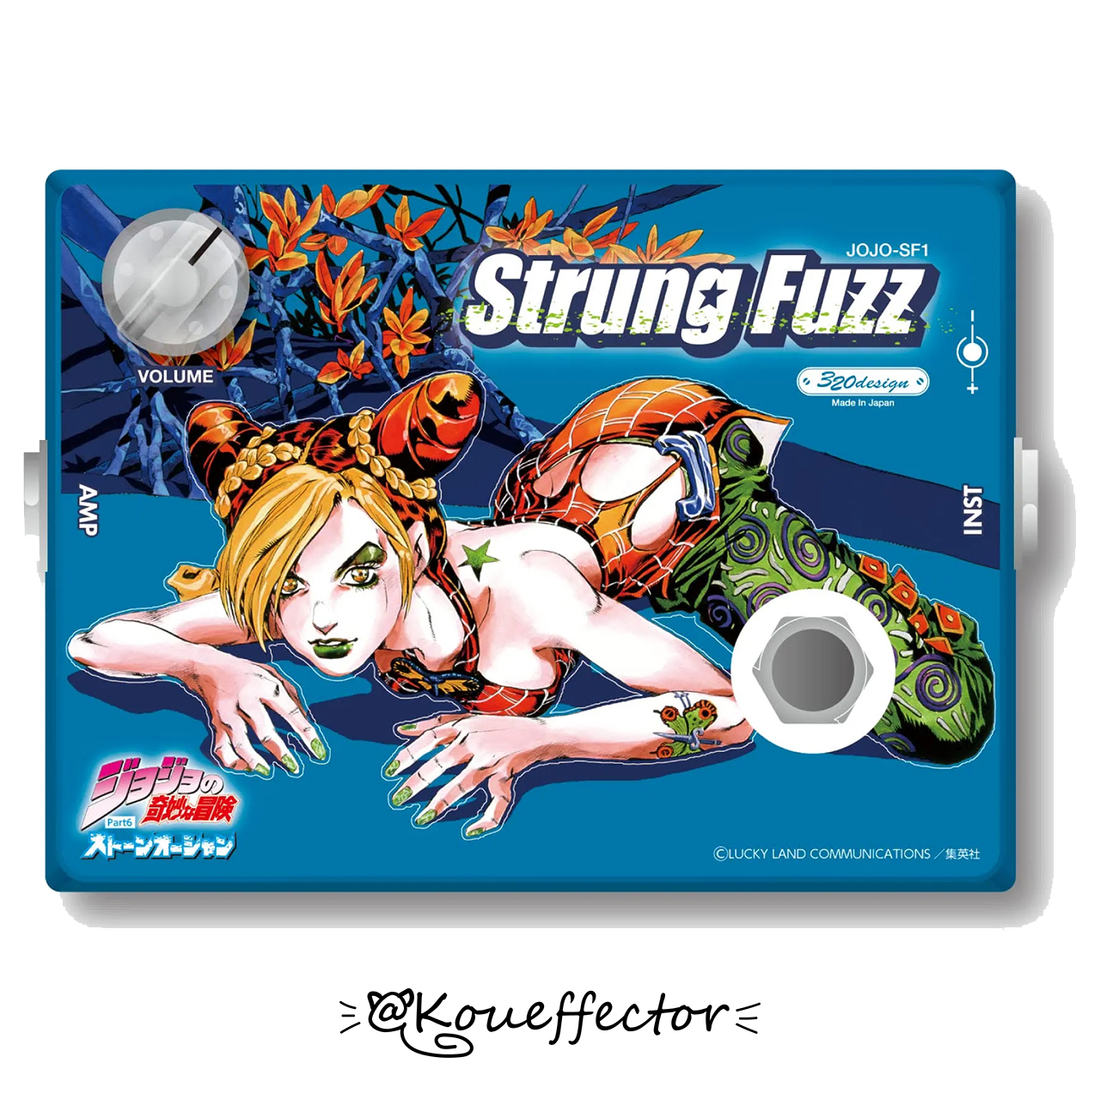 寇弟效果器 JOJO-SF1 strung fuzz 320design 吉他破音效果器